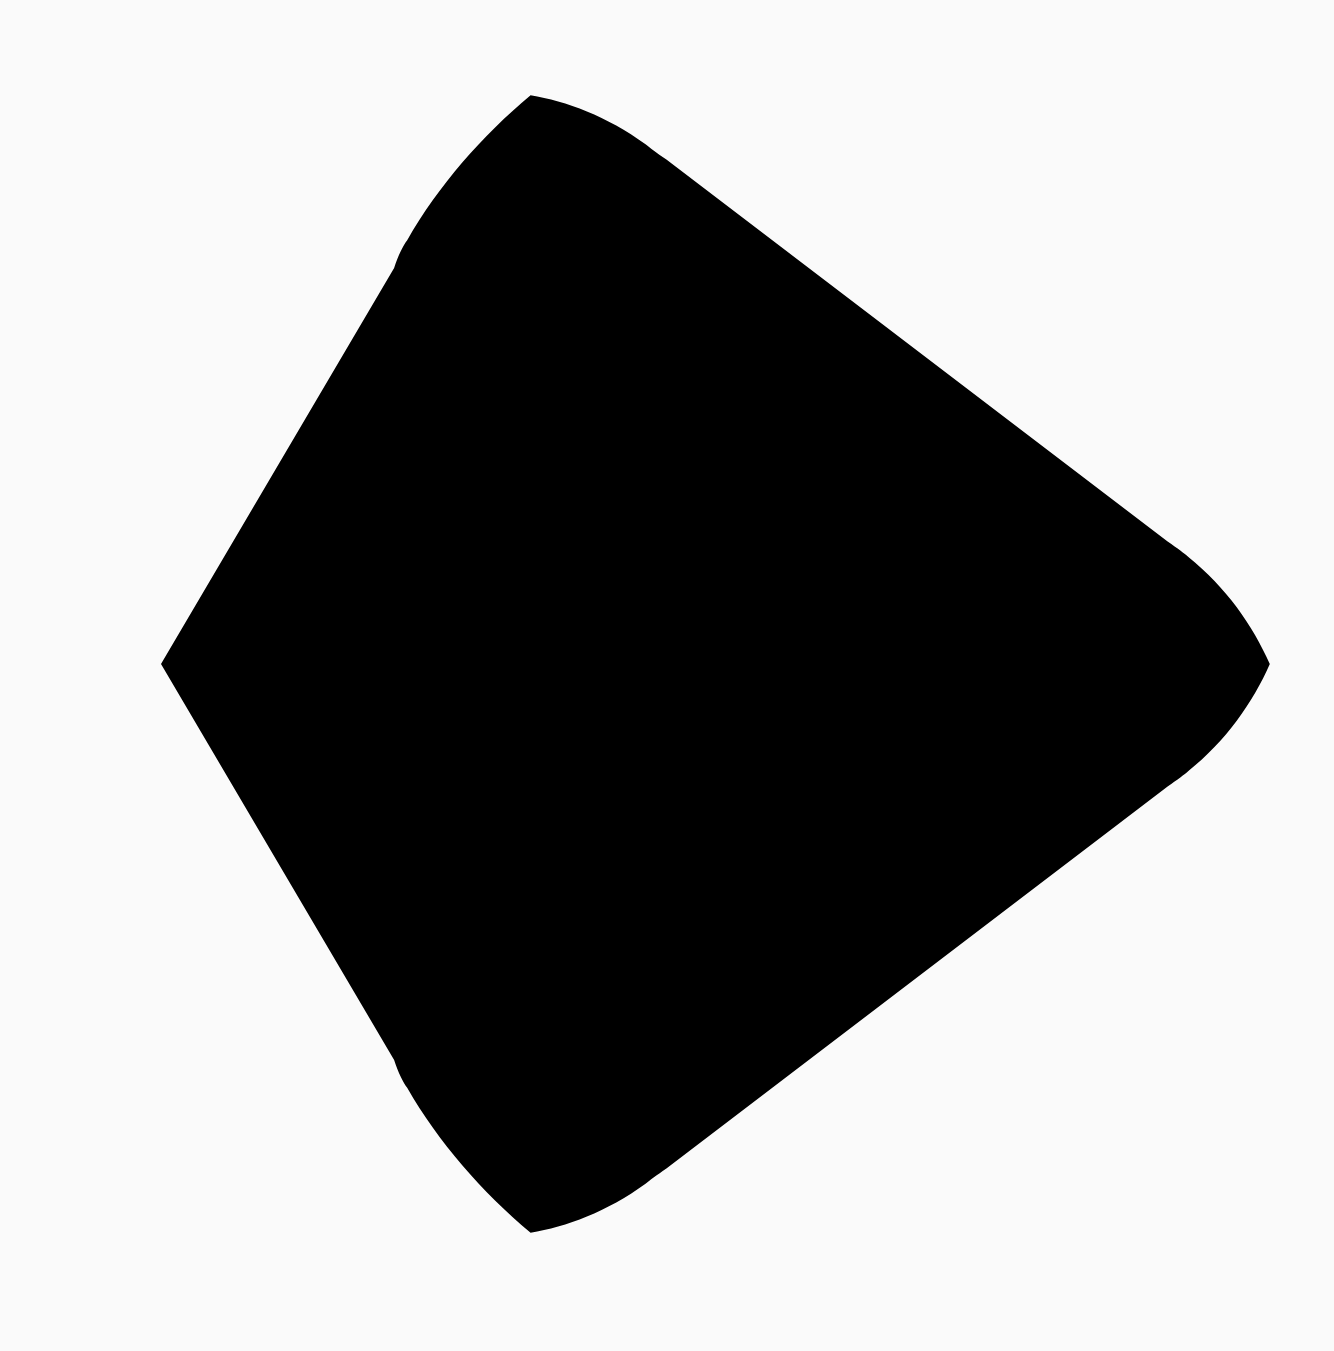 圆角三角形与正方形之间的距离的 50%